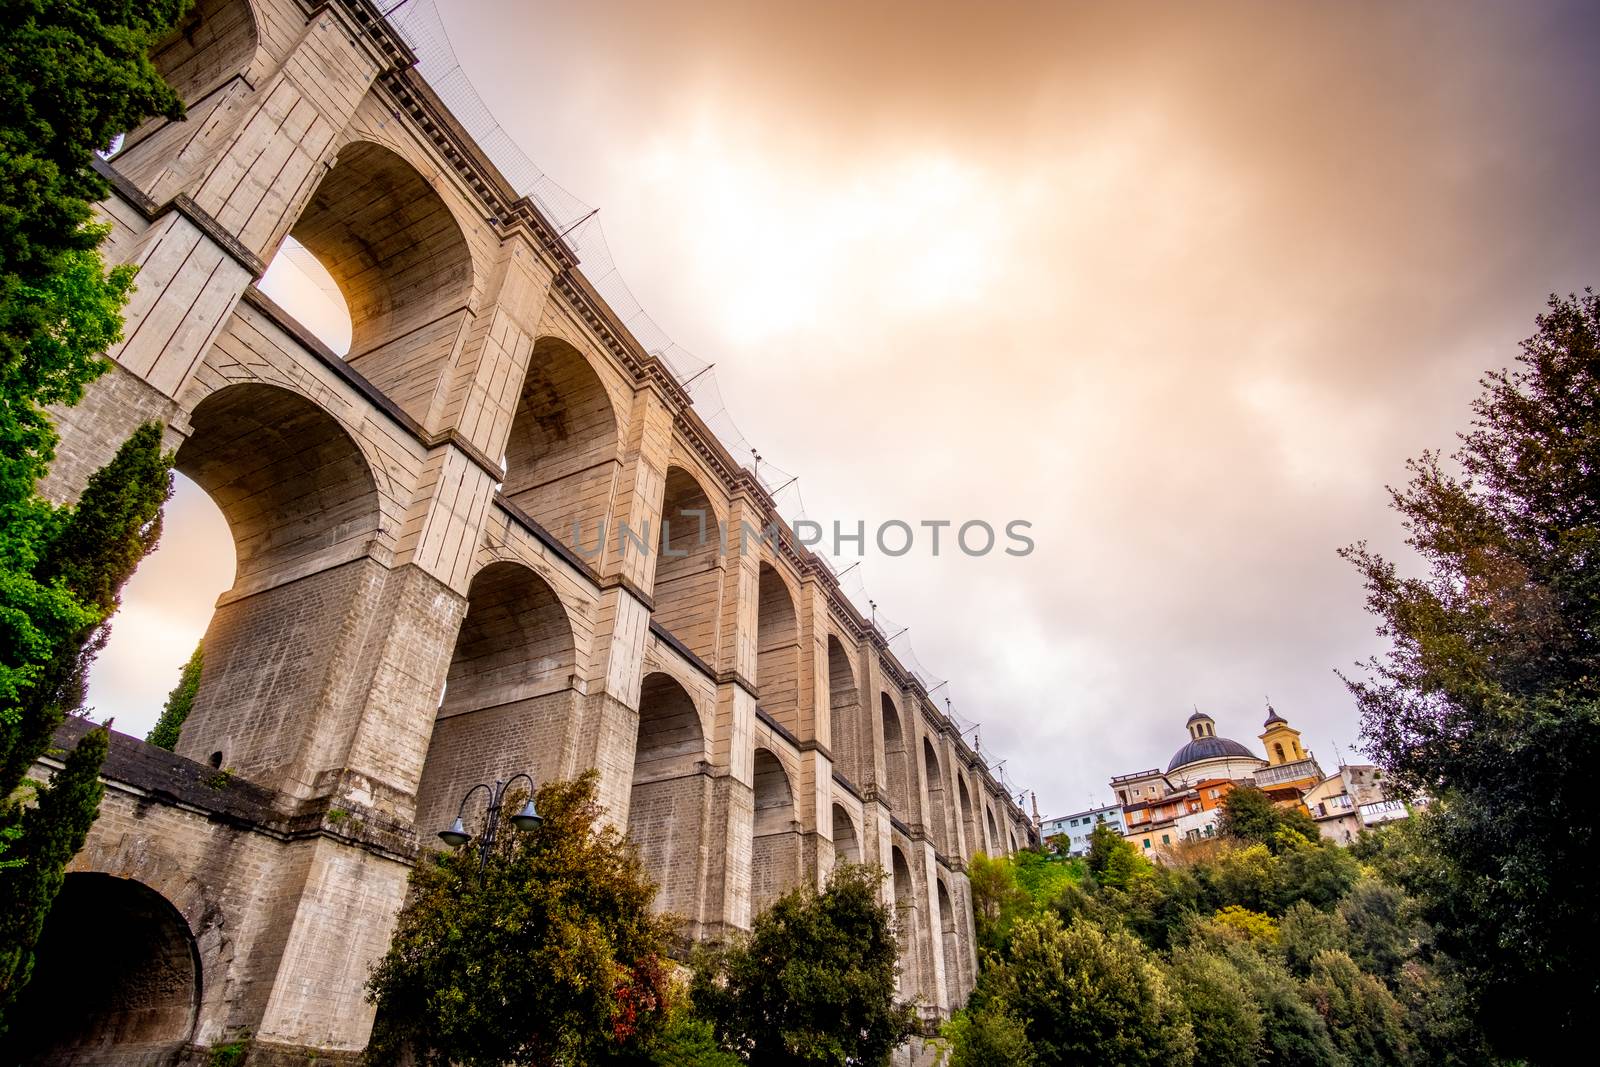 monumental bridge of Ariccia - Rome province in Lazio - Italy .